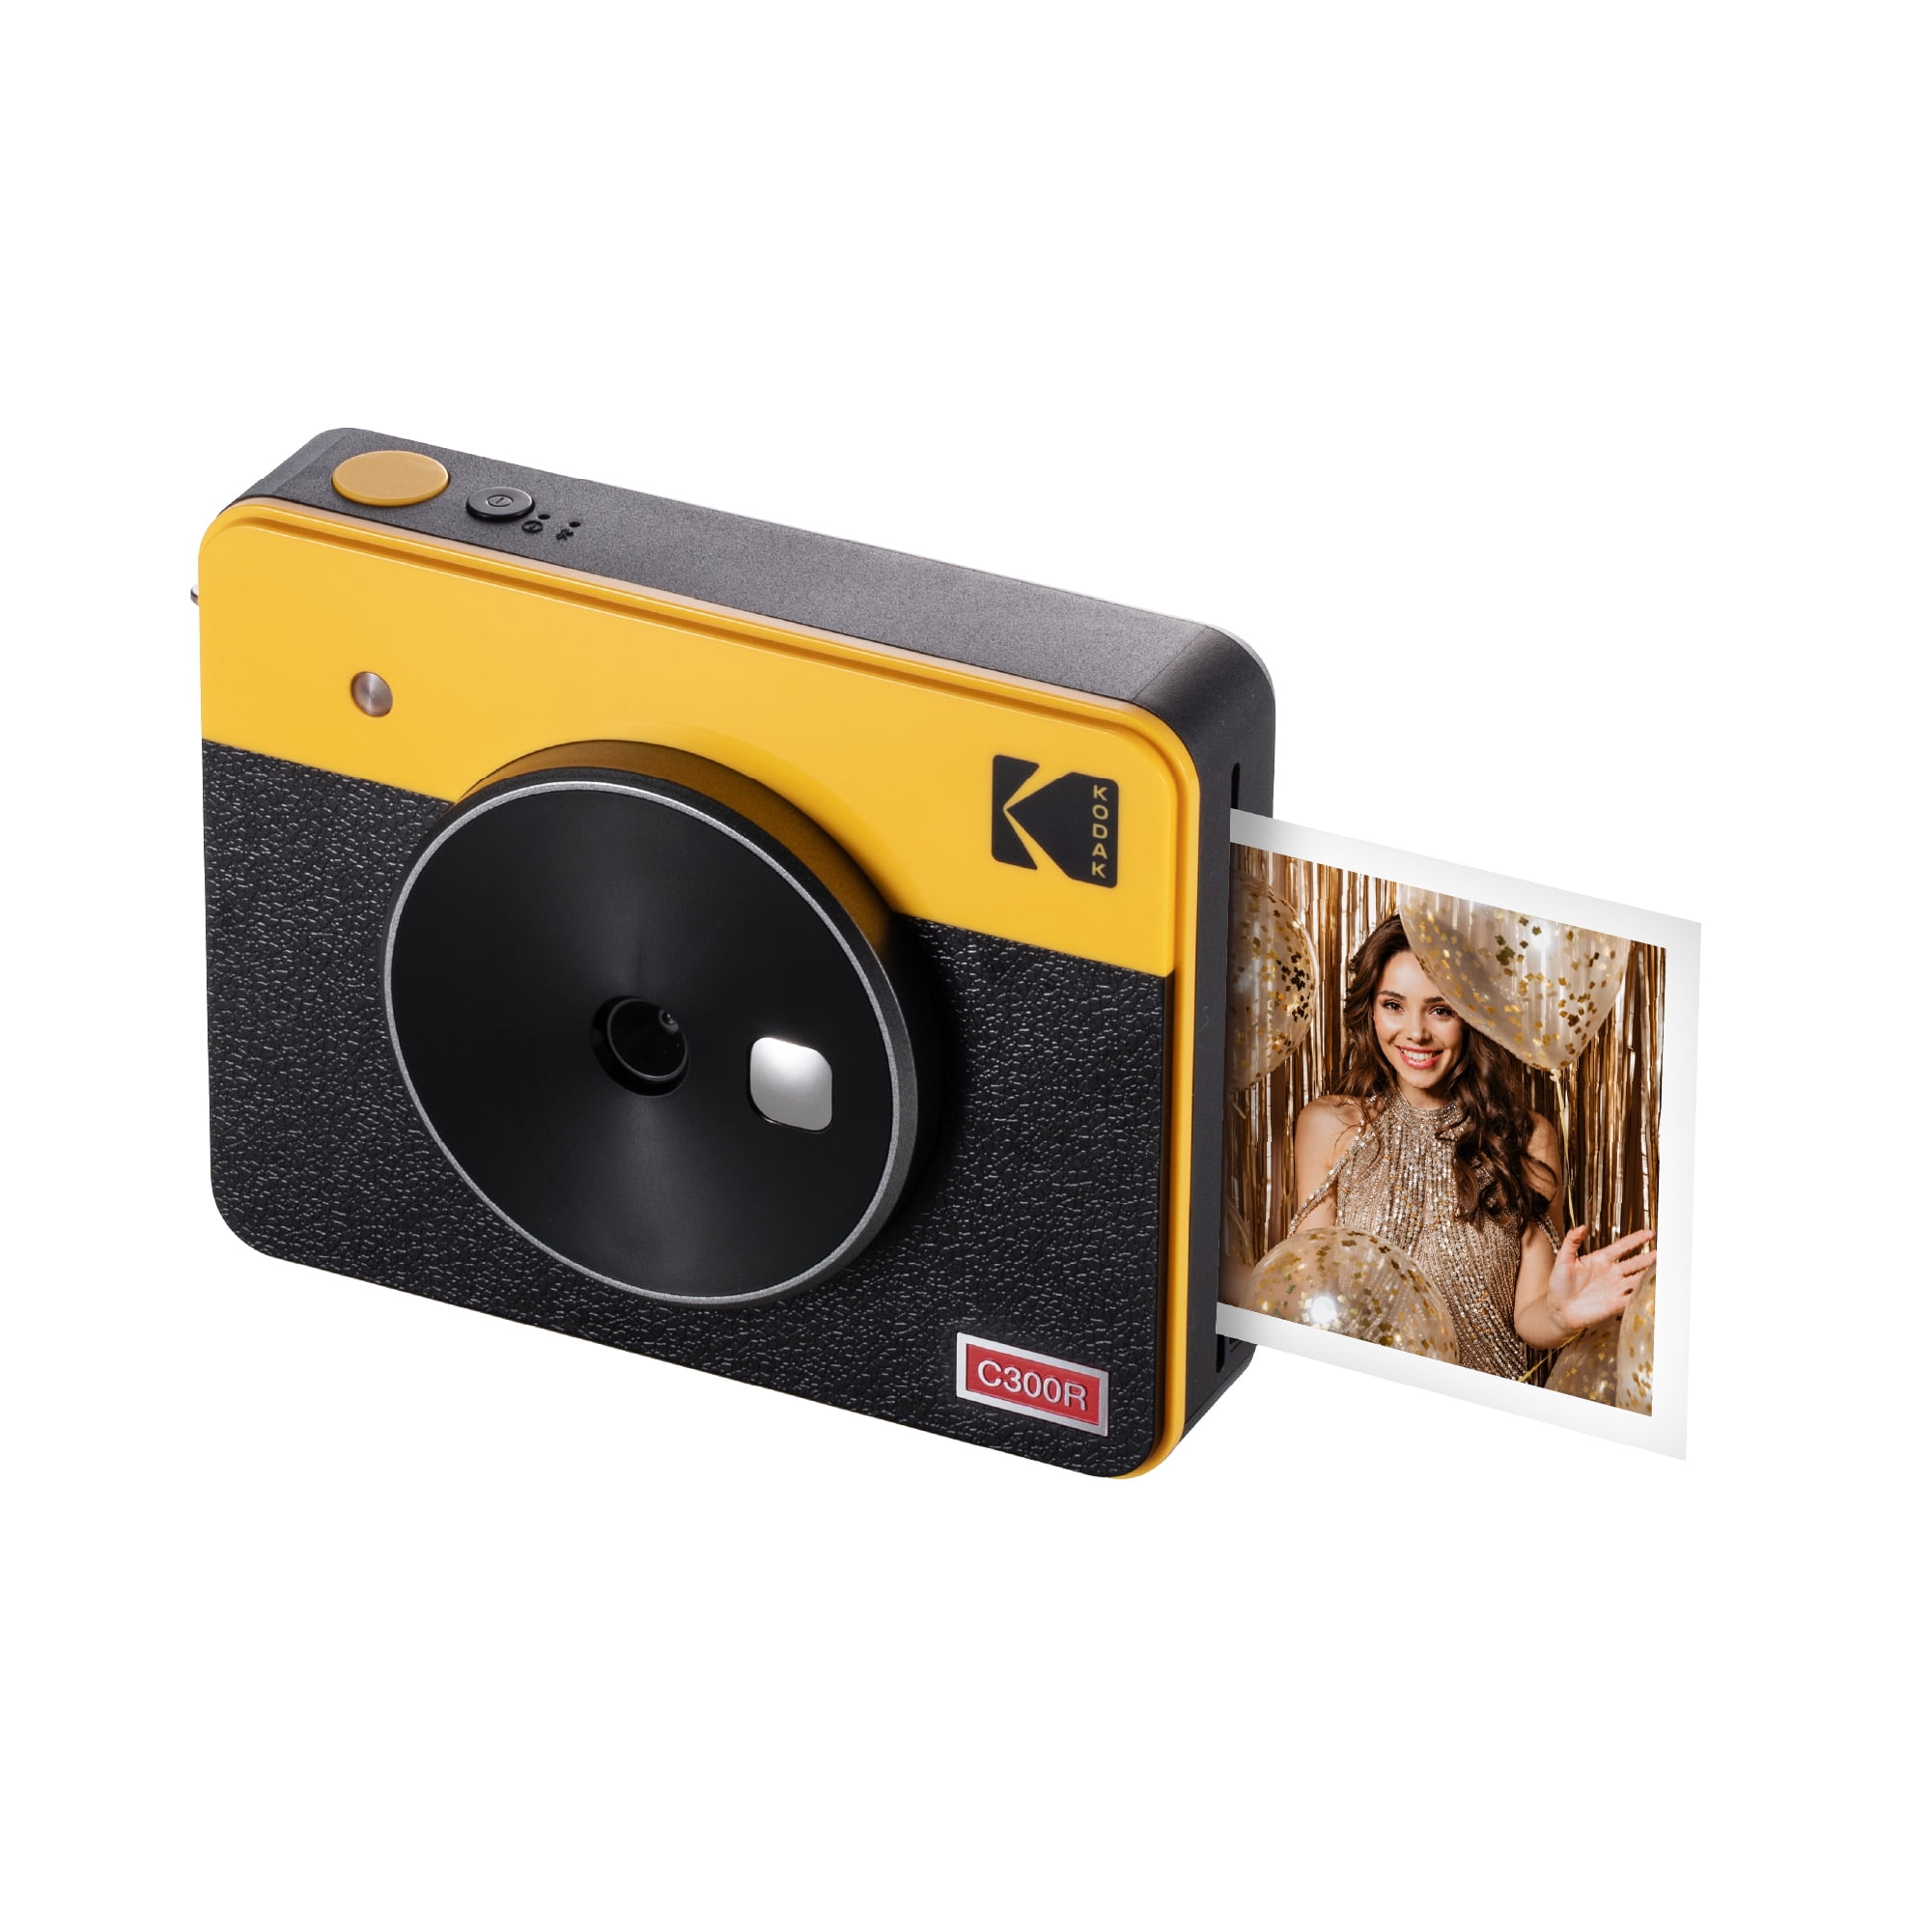 KODAK 4PASS 7.5 x 7.5 cm Film Cartridge (60 Sheets) for KODAK Mini 3 Retro  and Mini Shot 3 Retro